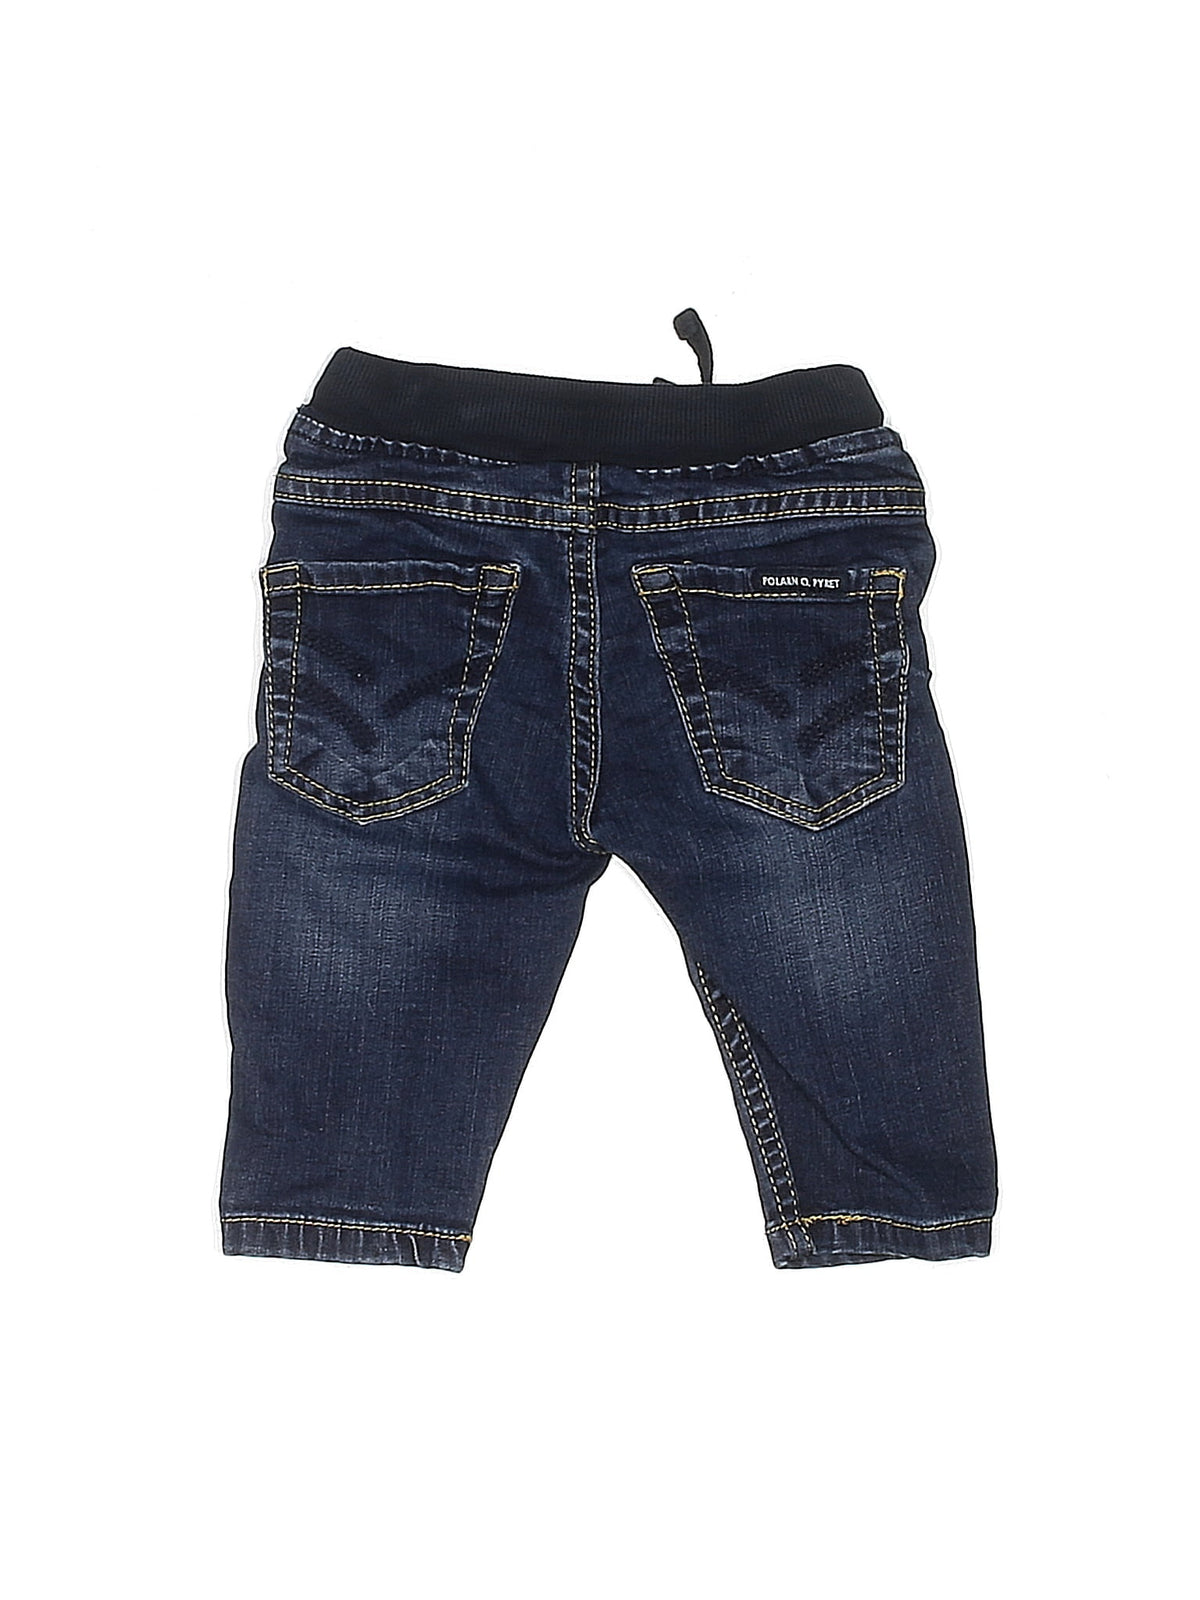 Jeans size - 60 (CM)